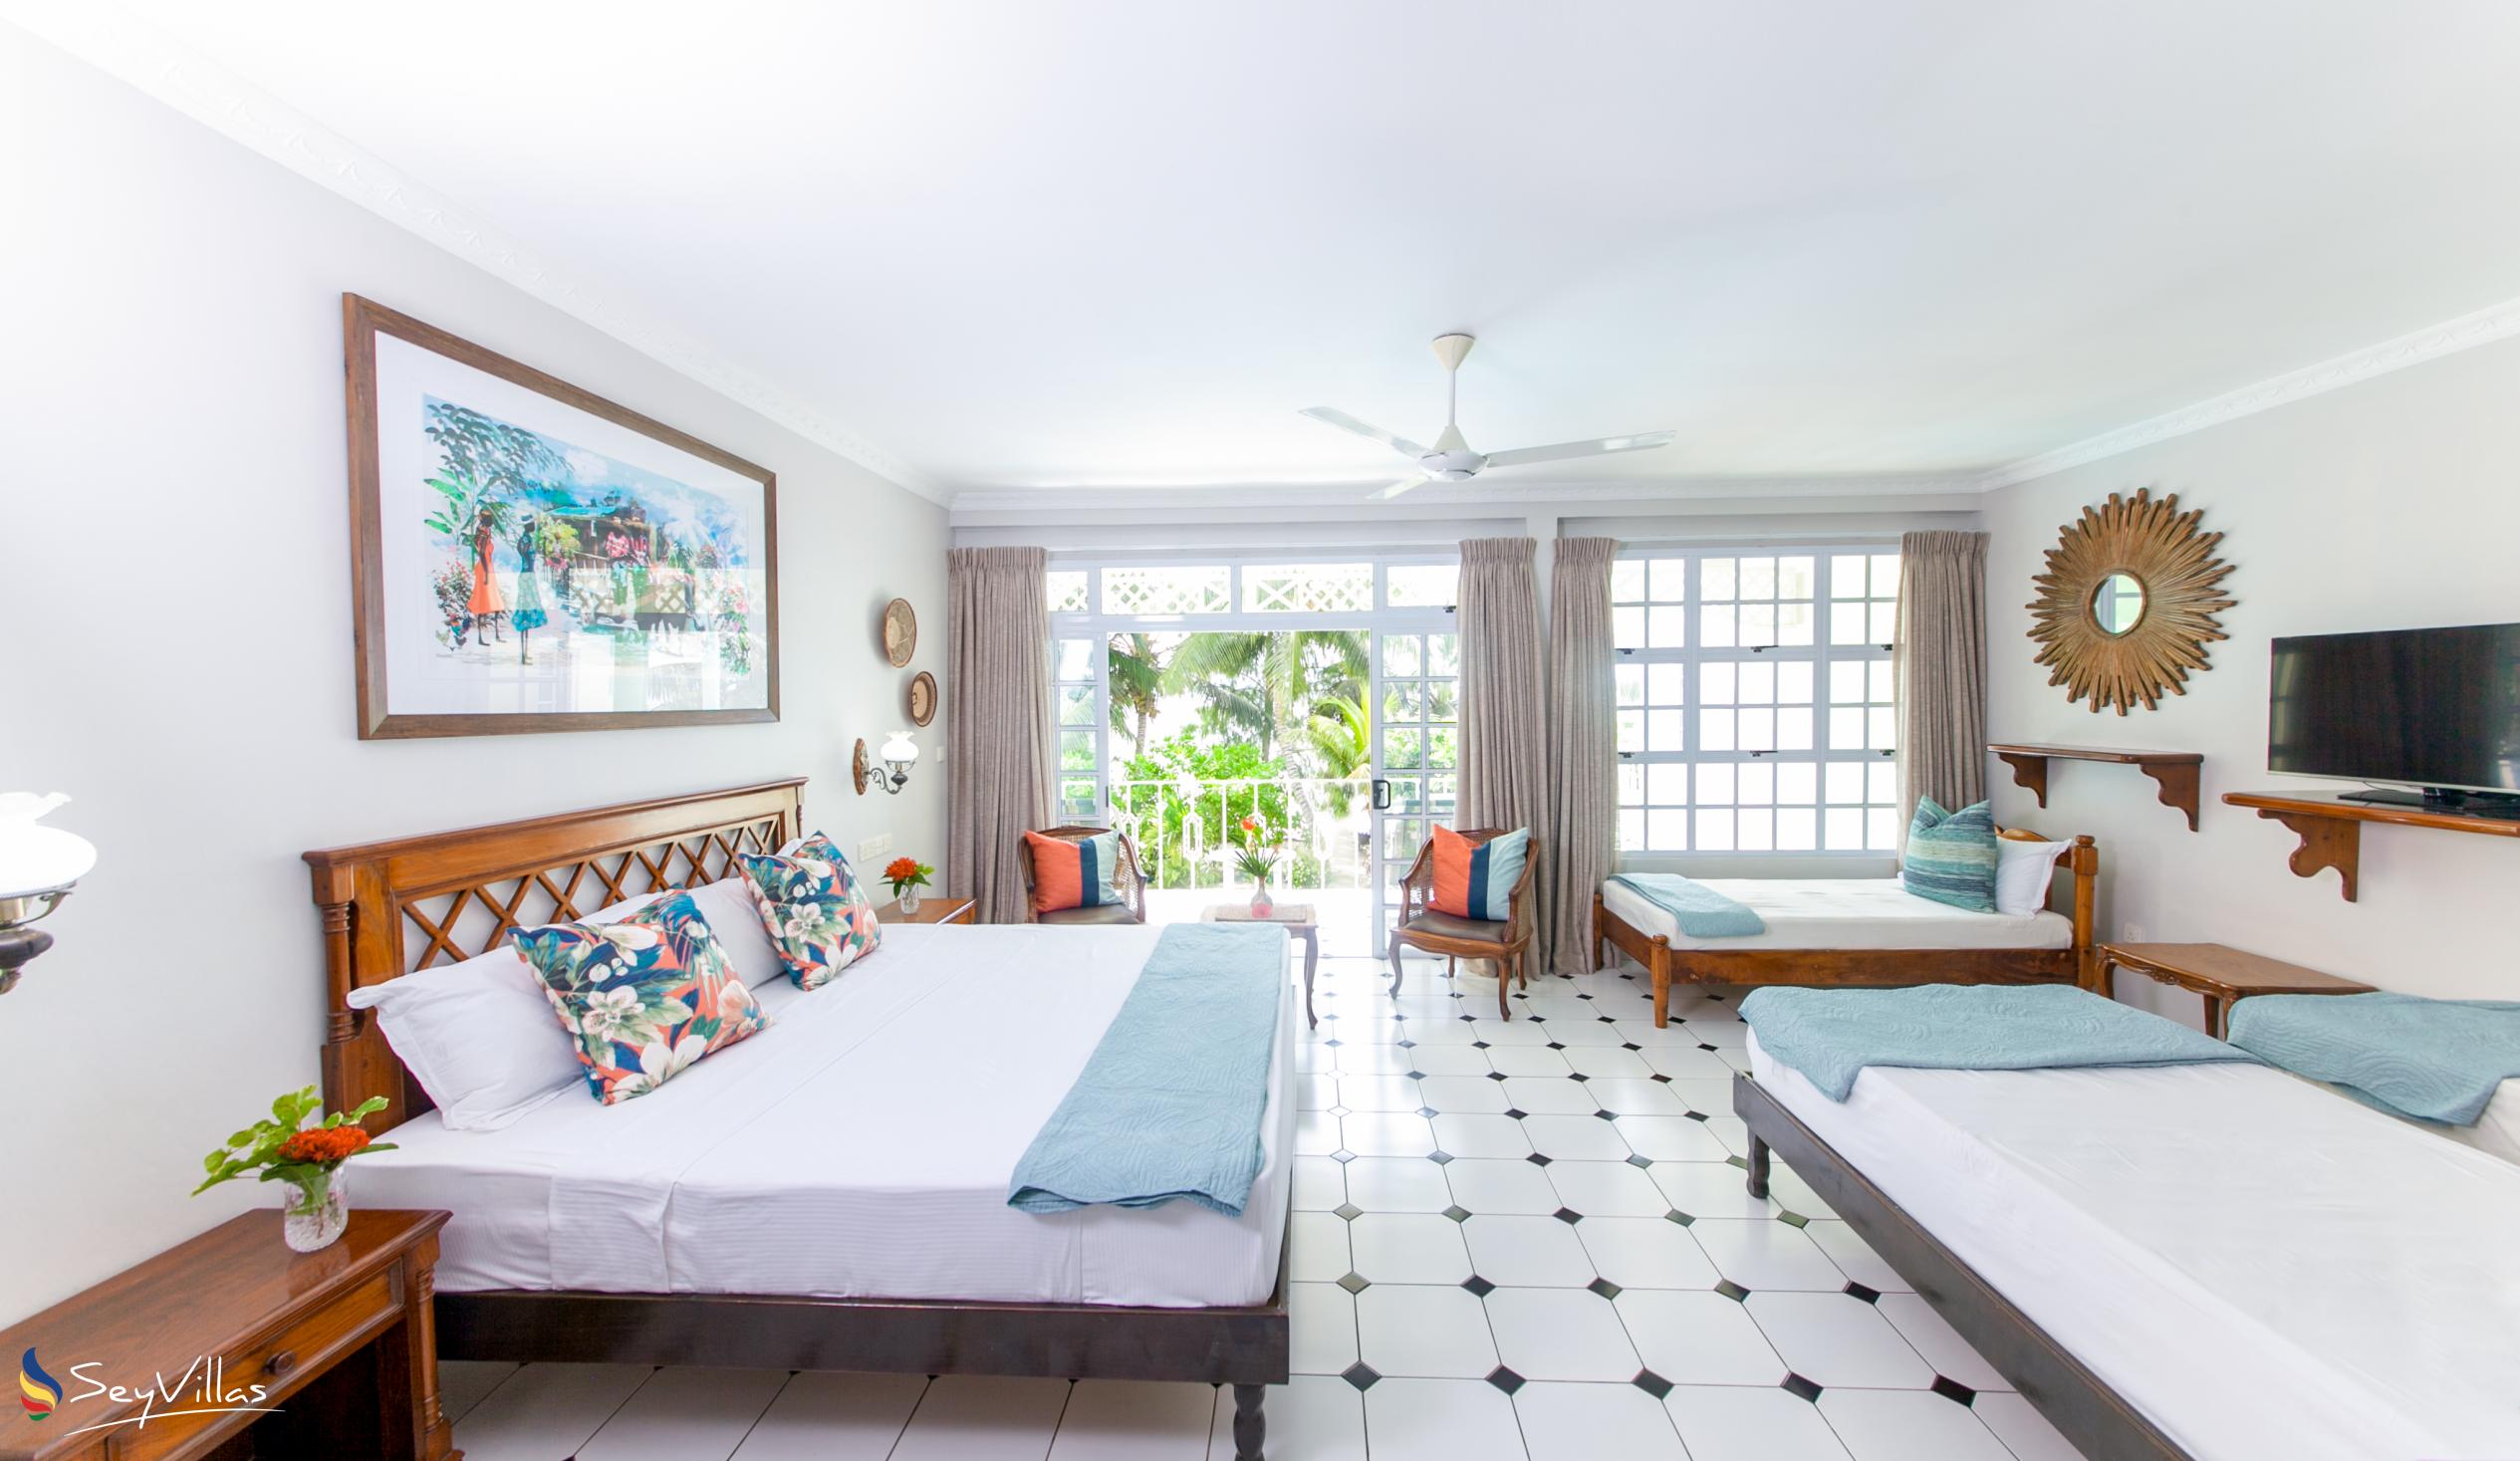 Foto 31: Palm Beach Hotel - Familienzimmer - Praslin (Seychellen)